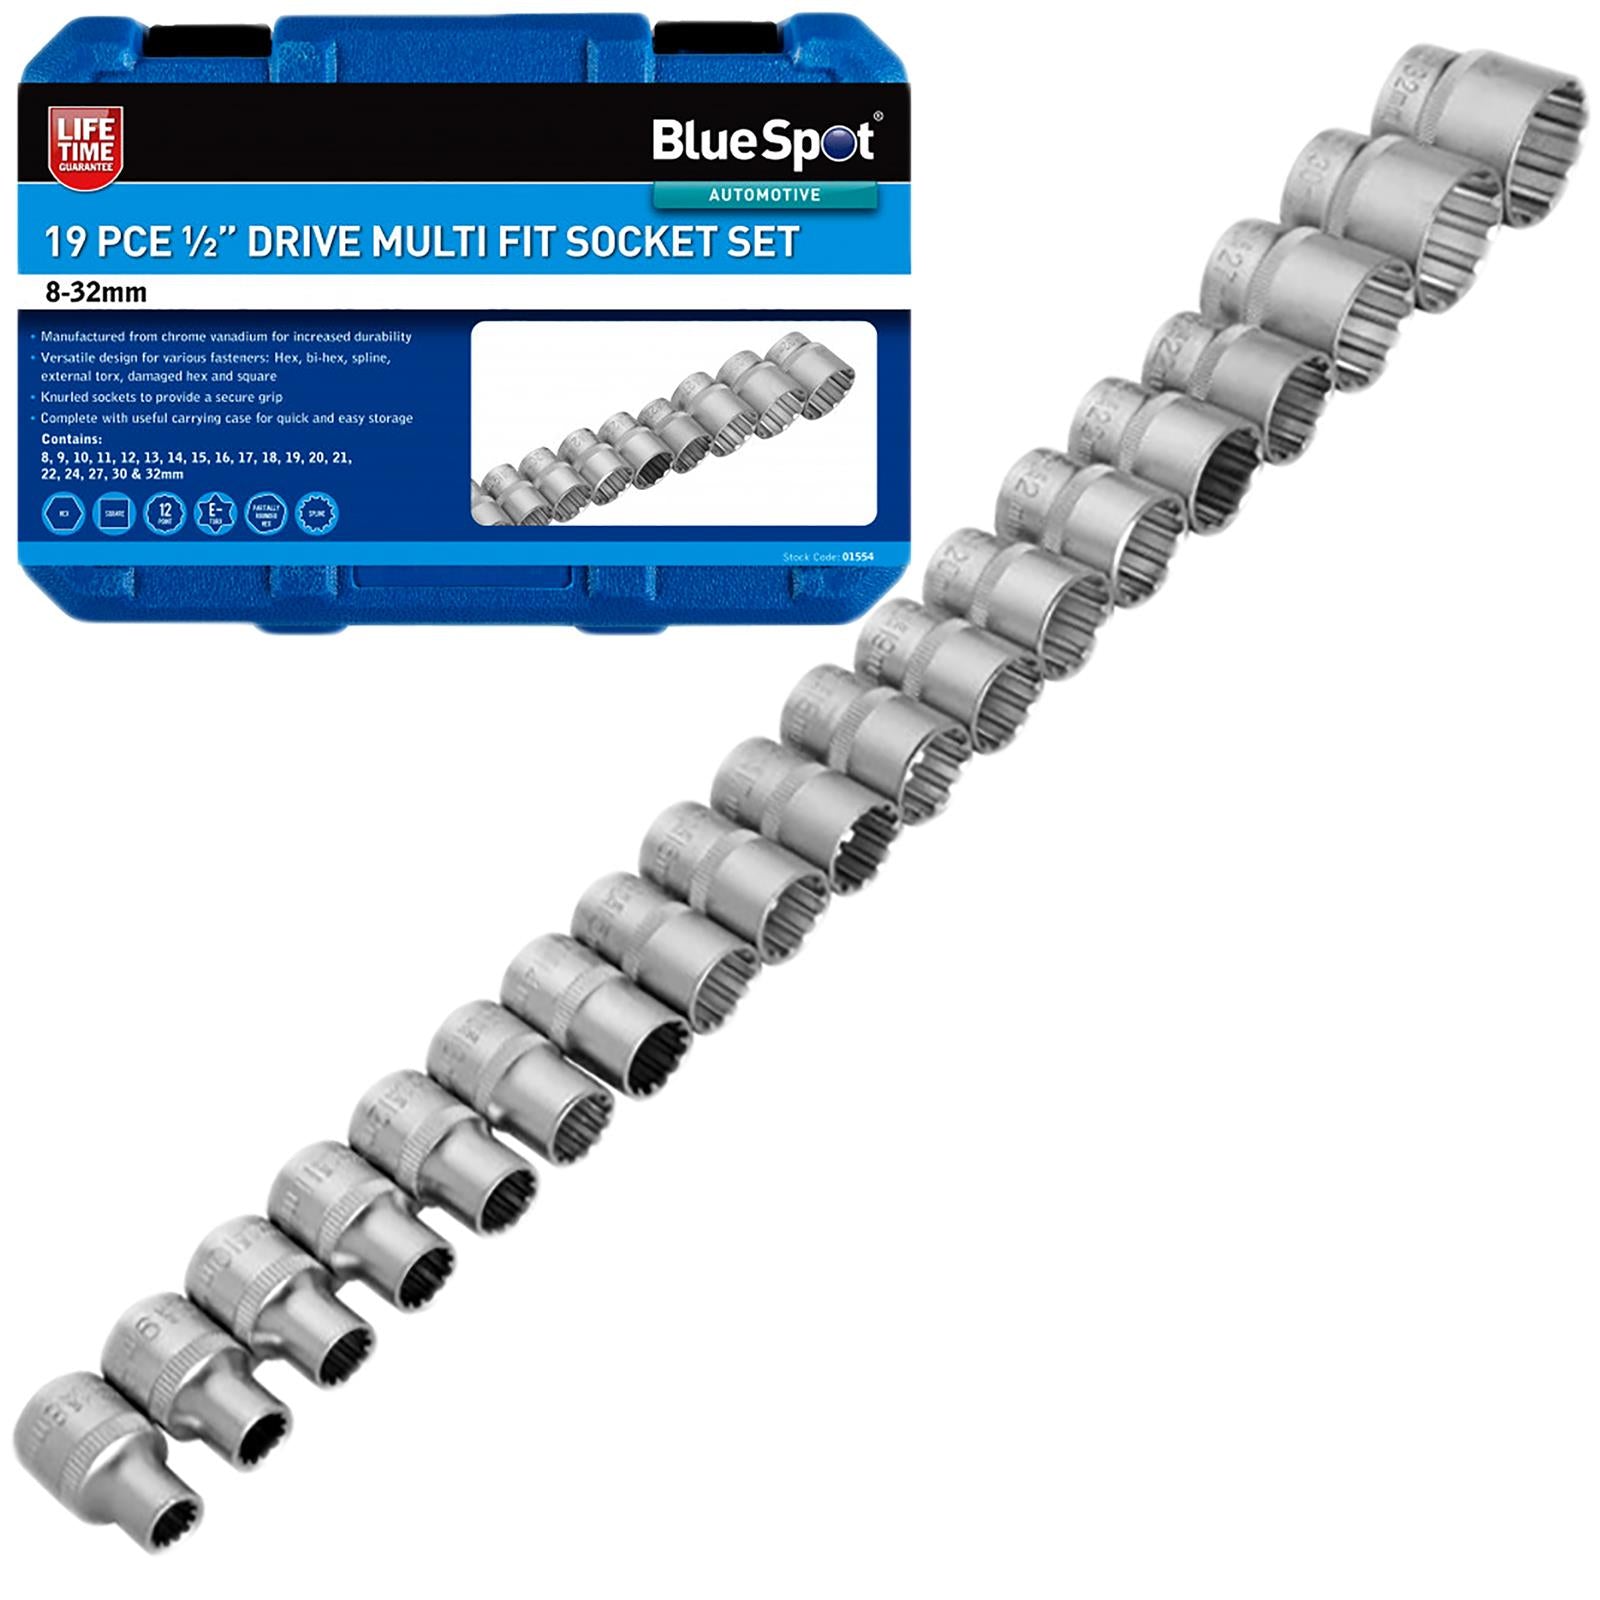 BlueSpot Multi Fit Socket Set 1/2" Drive 19 Piece 8-32mm in Storage Case